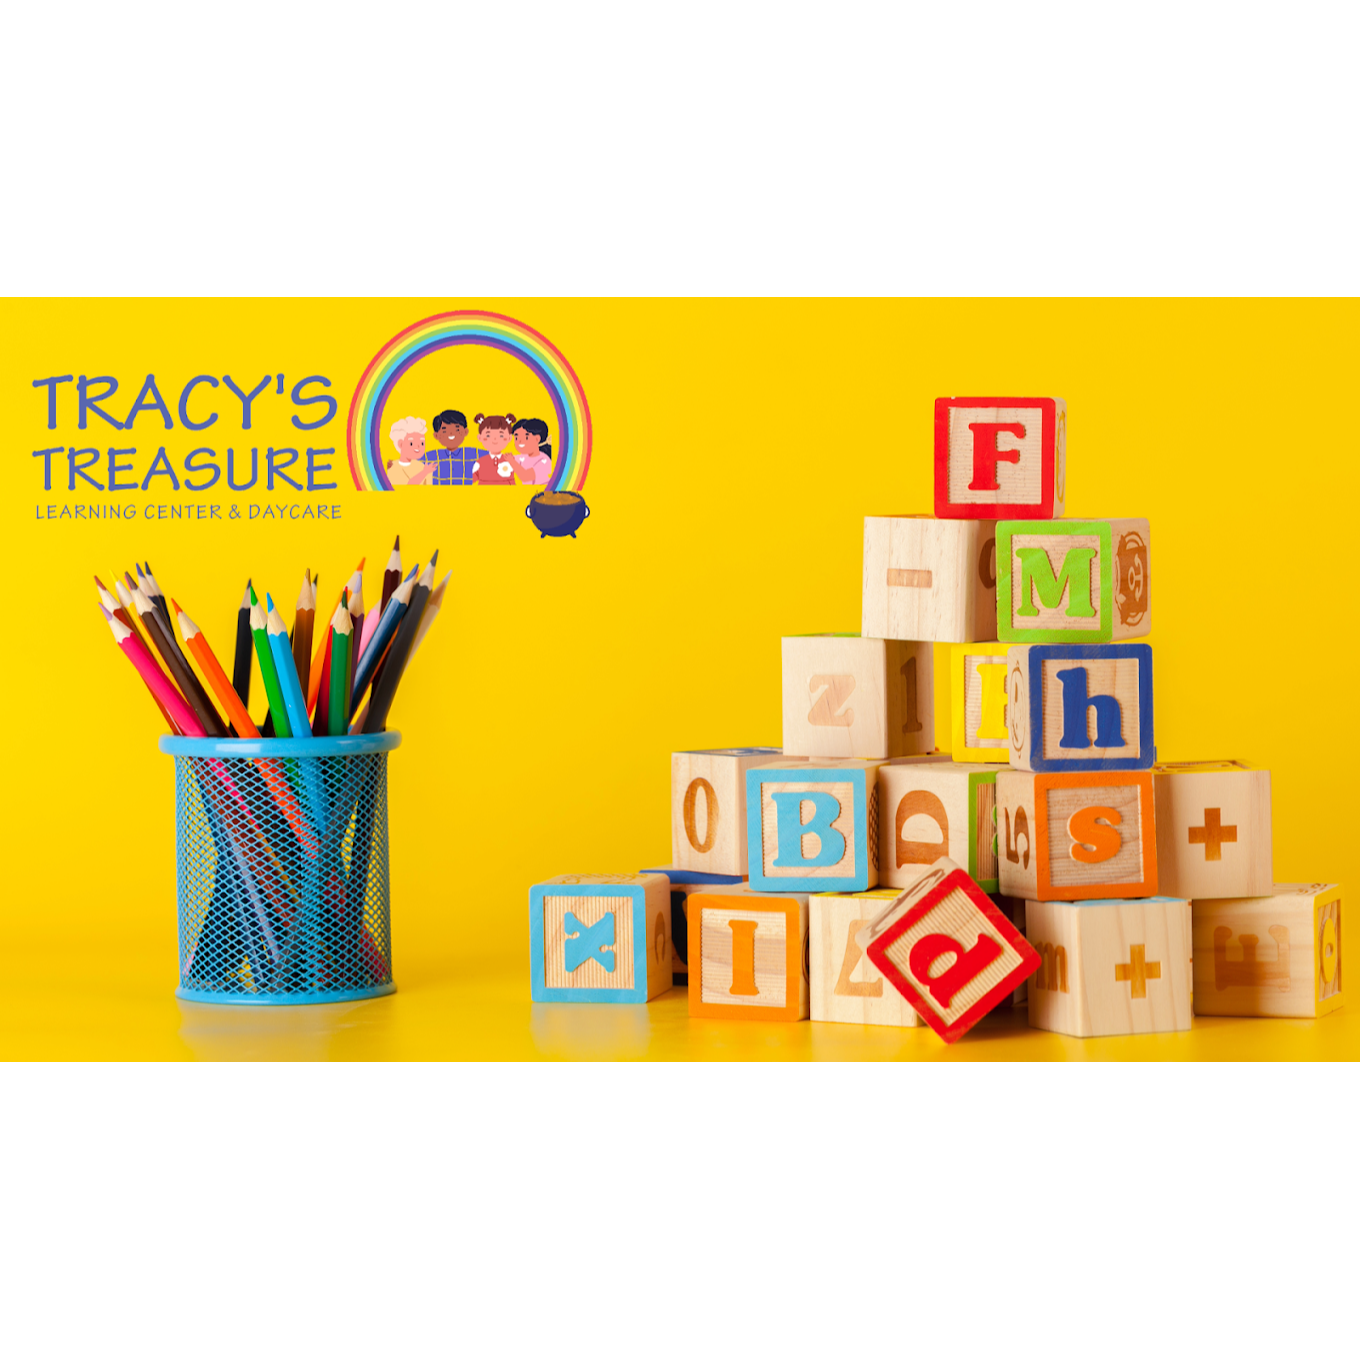 Tracy's Treasure Daycare - Birmingham, AL 35211 - (205)413-6577 | ShowMeLocal.com